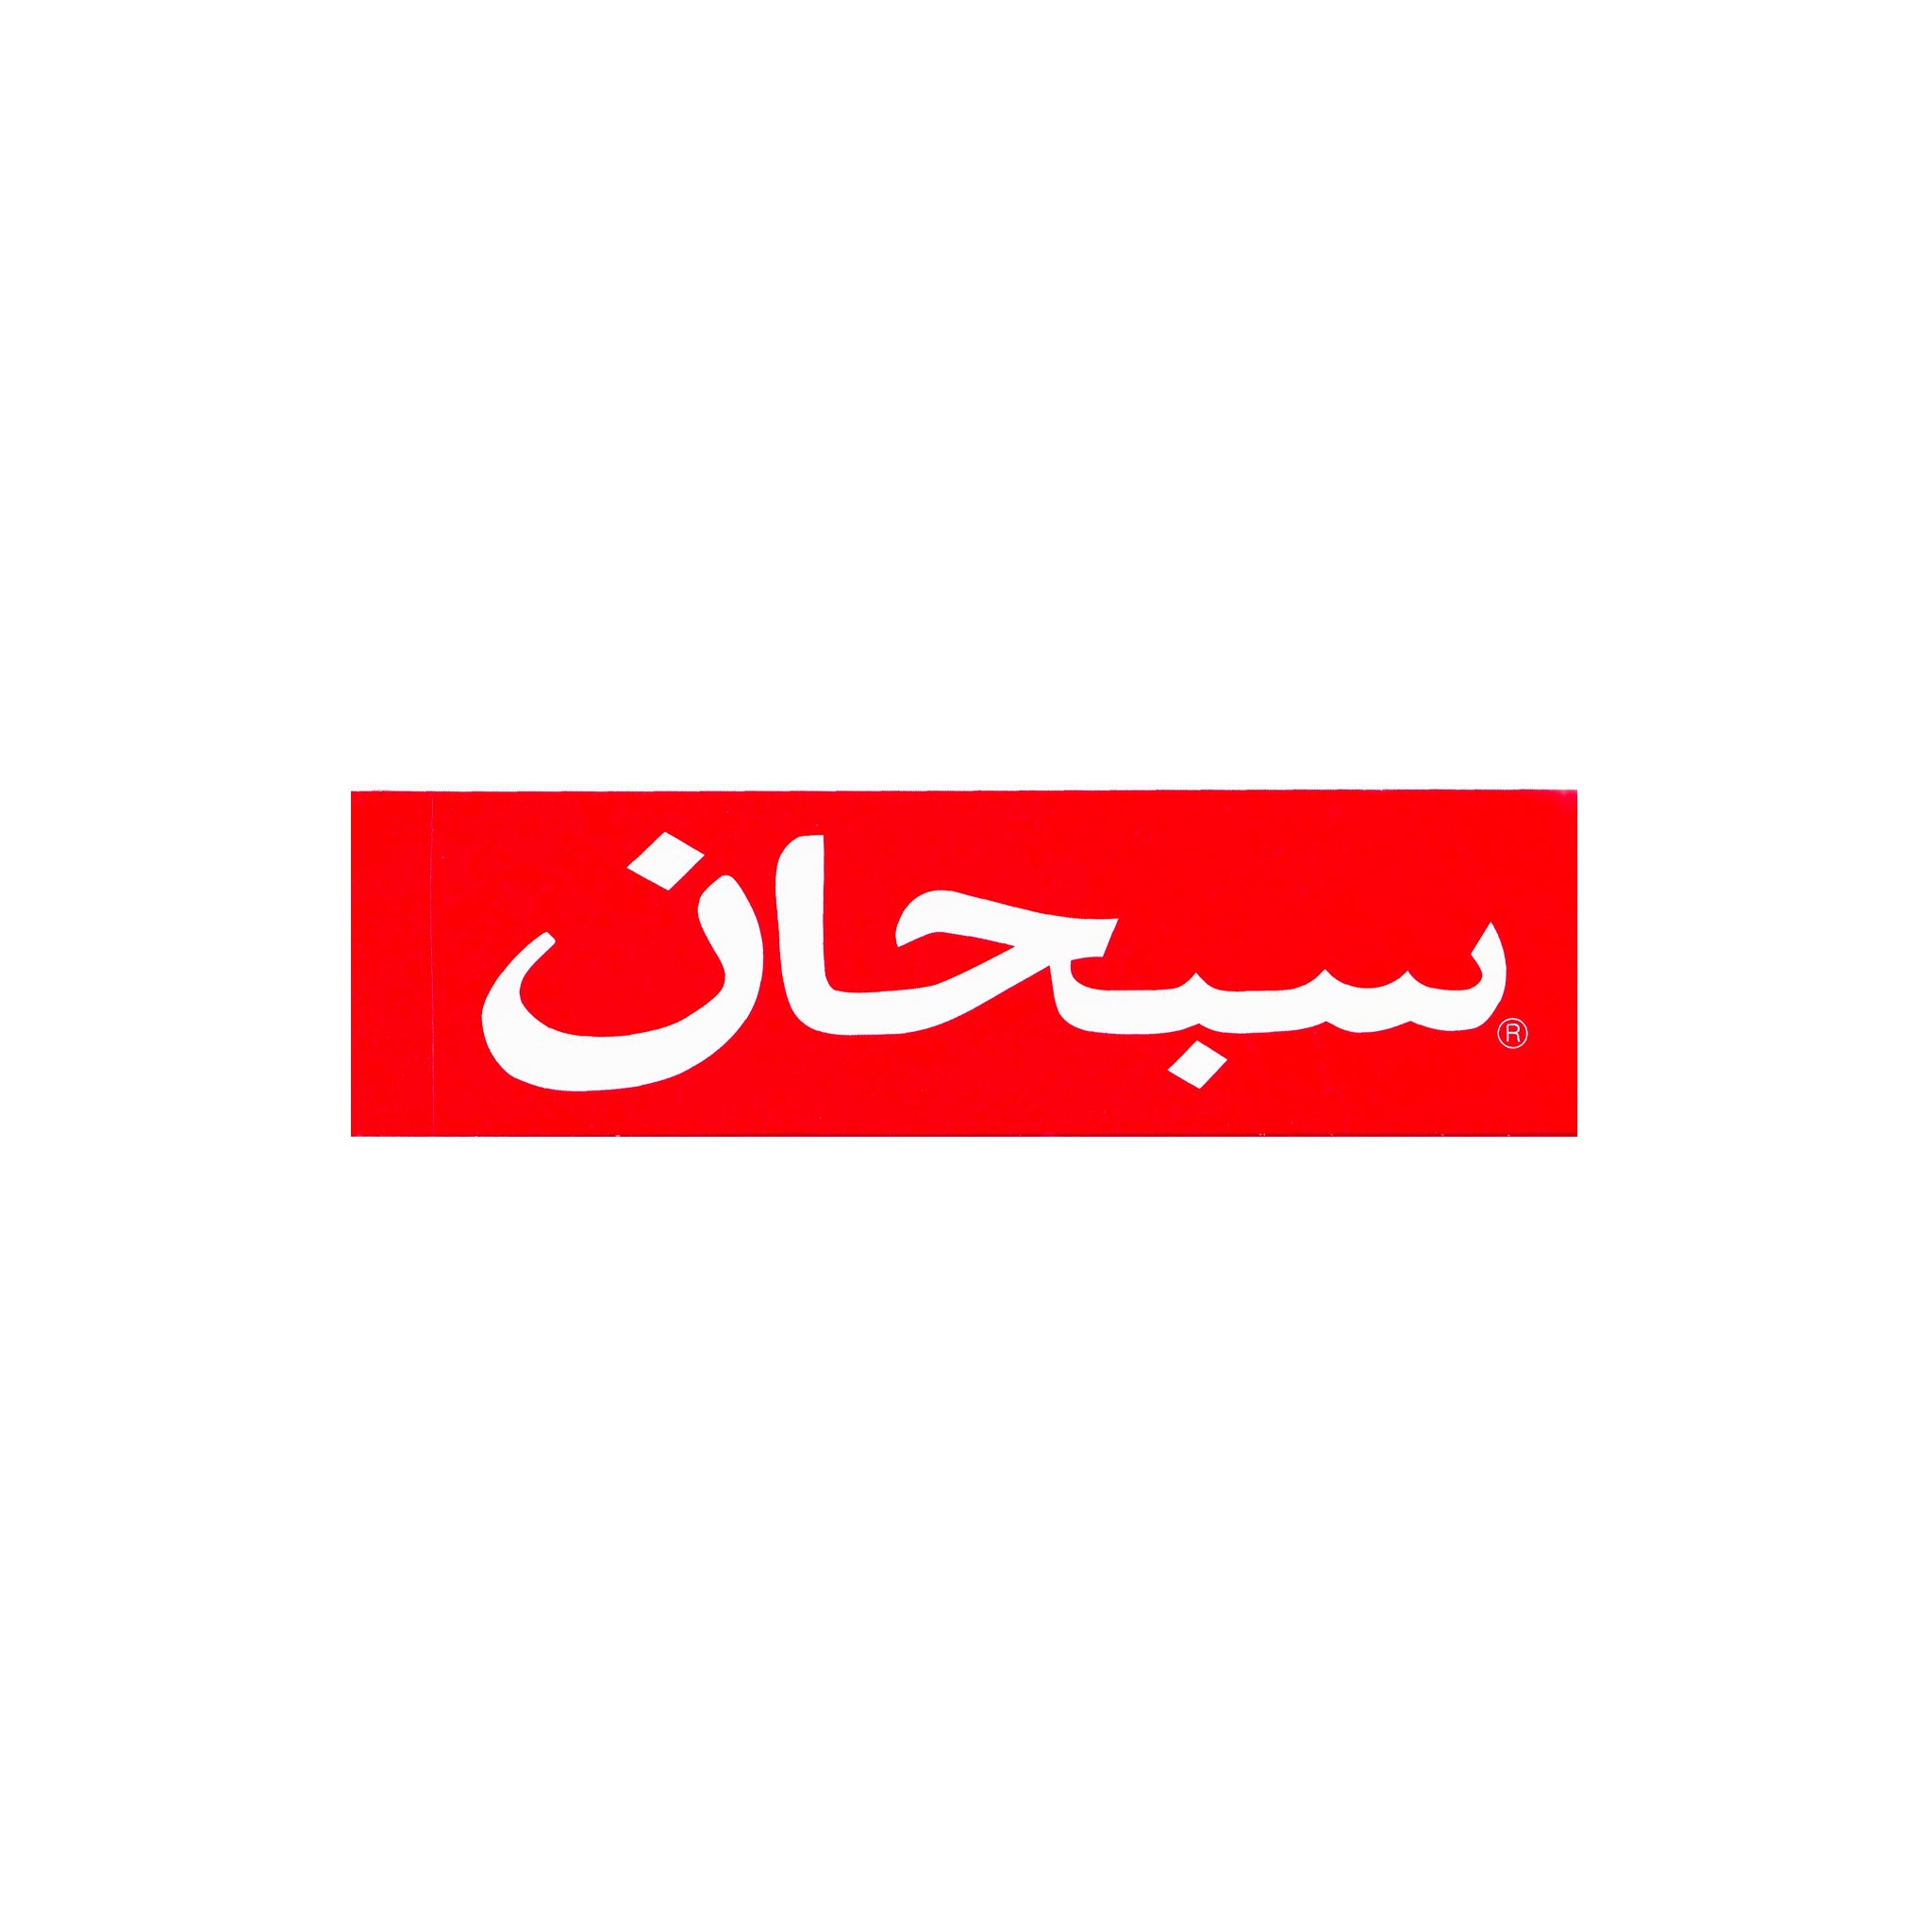 SUPREME 阿拉伯文盒标志贴纸红色